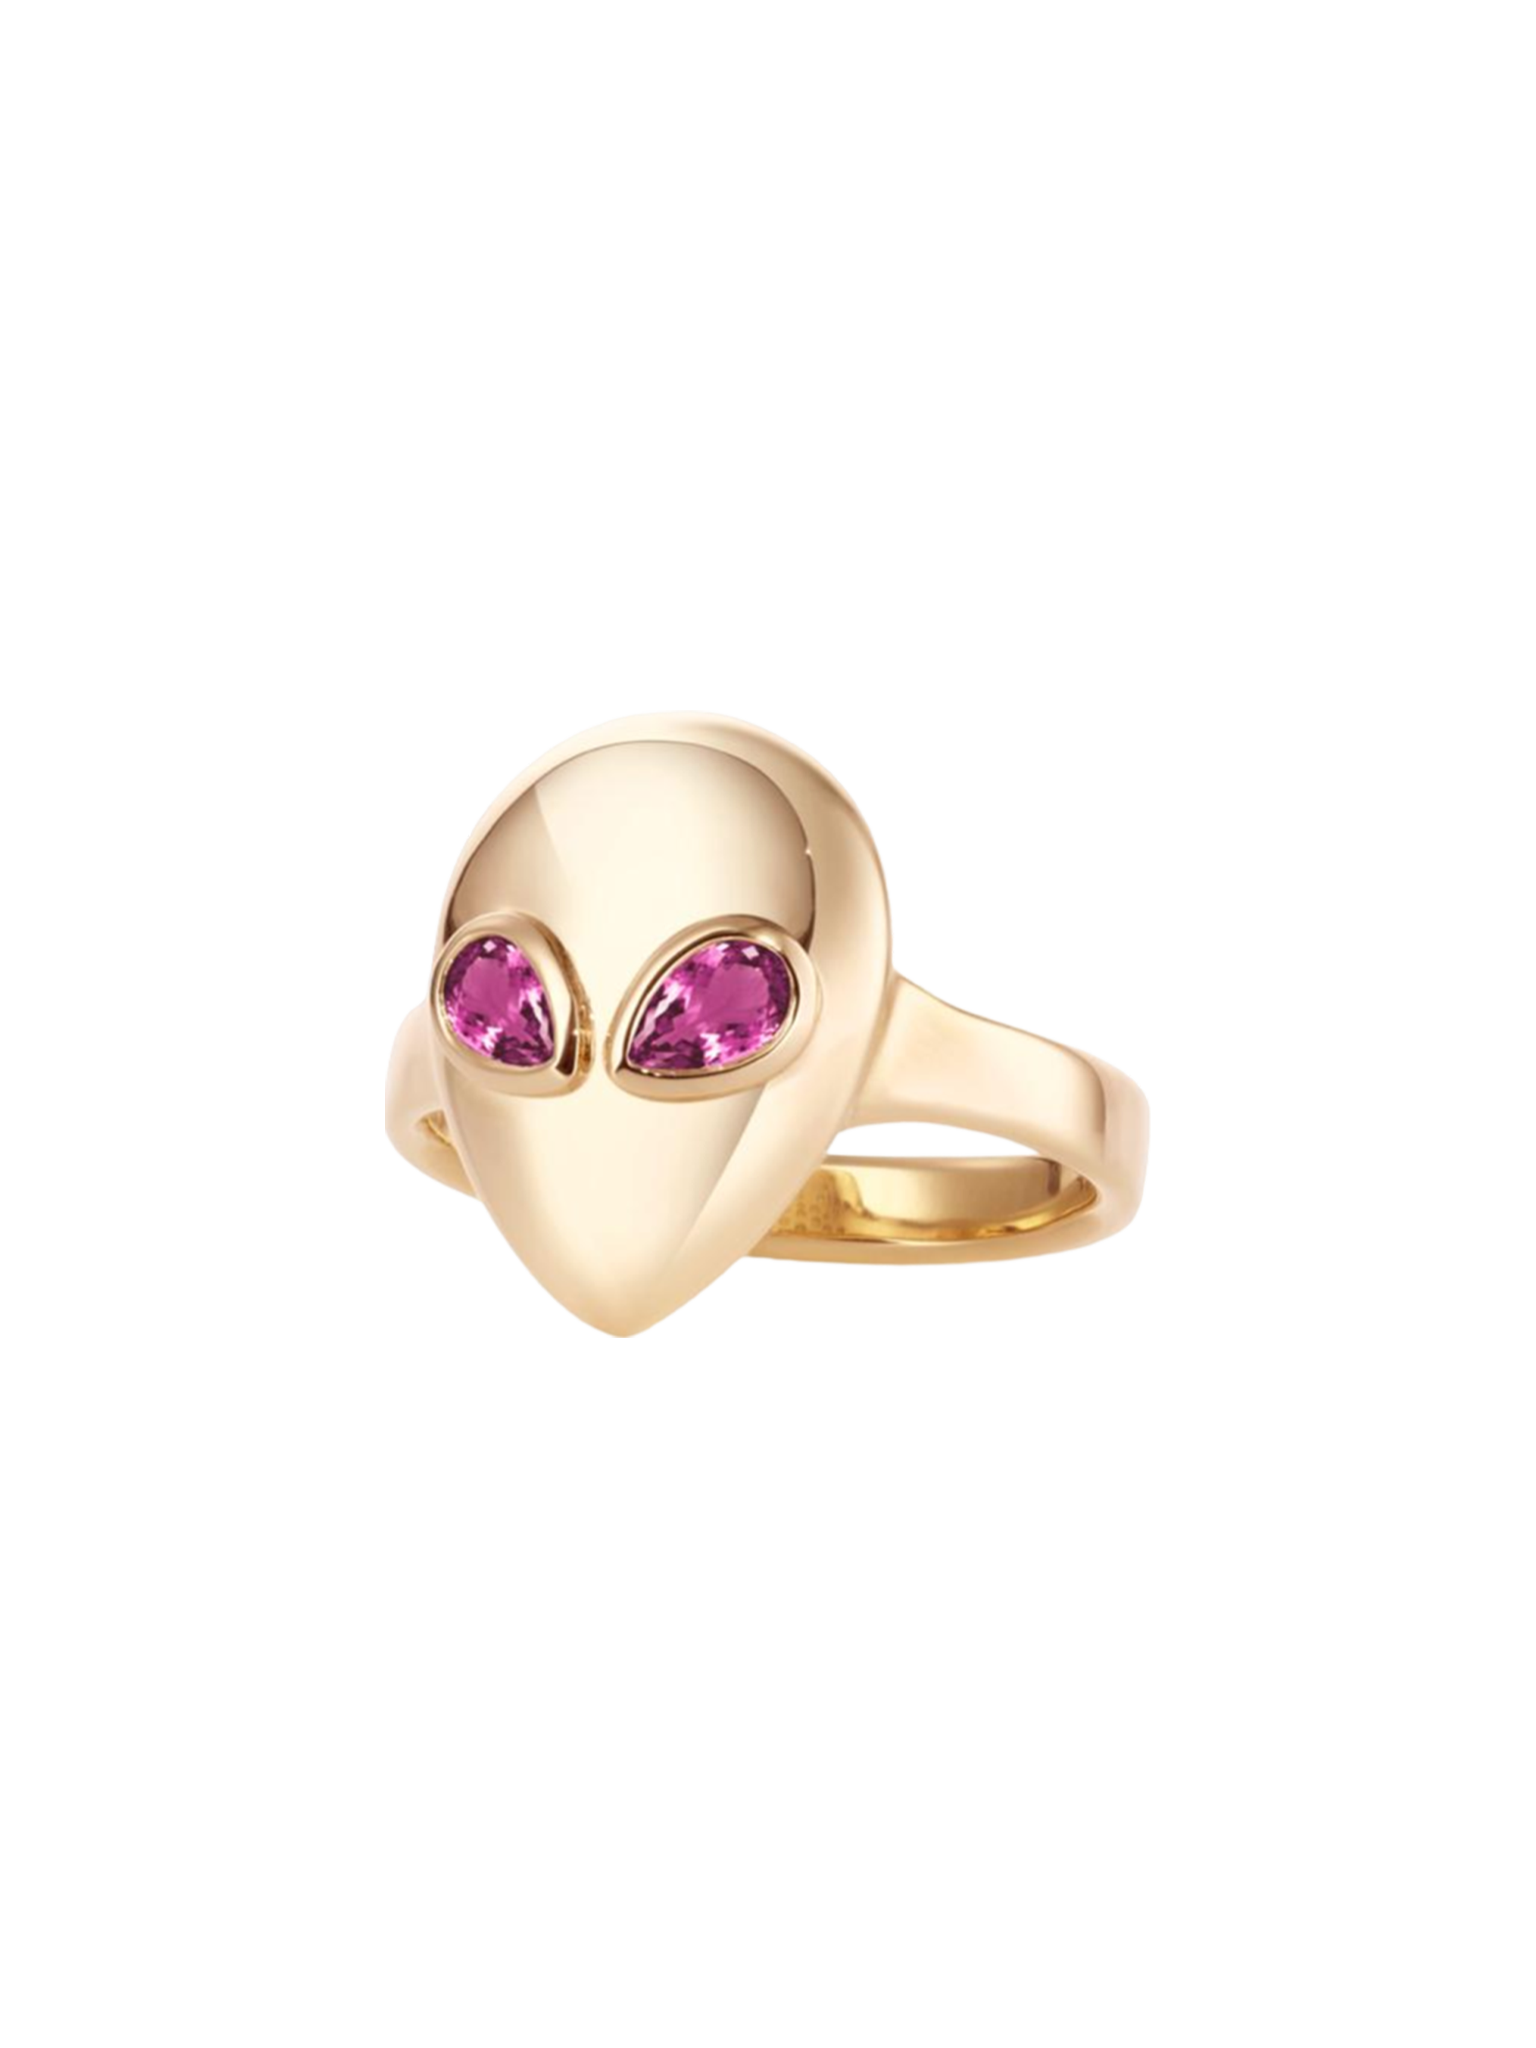 Alien ring pink tourmaline